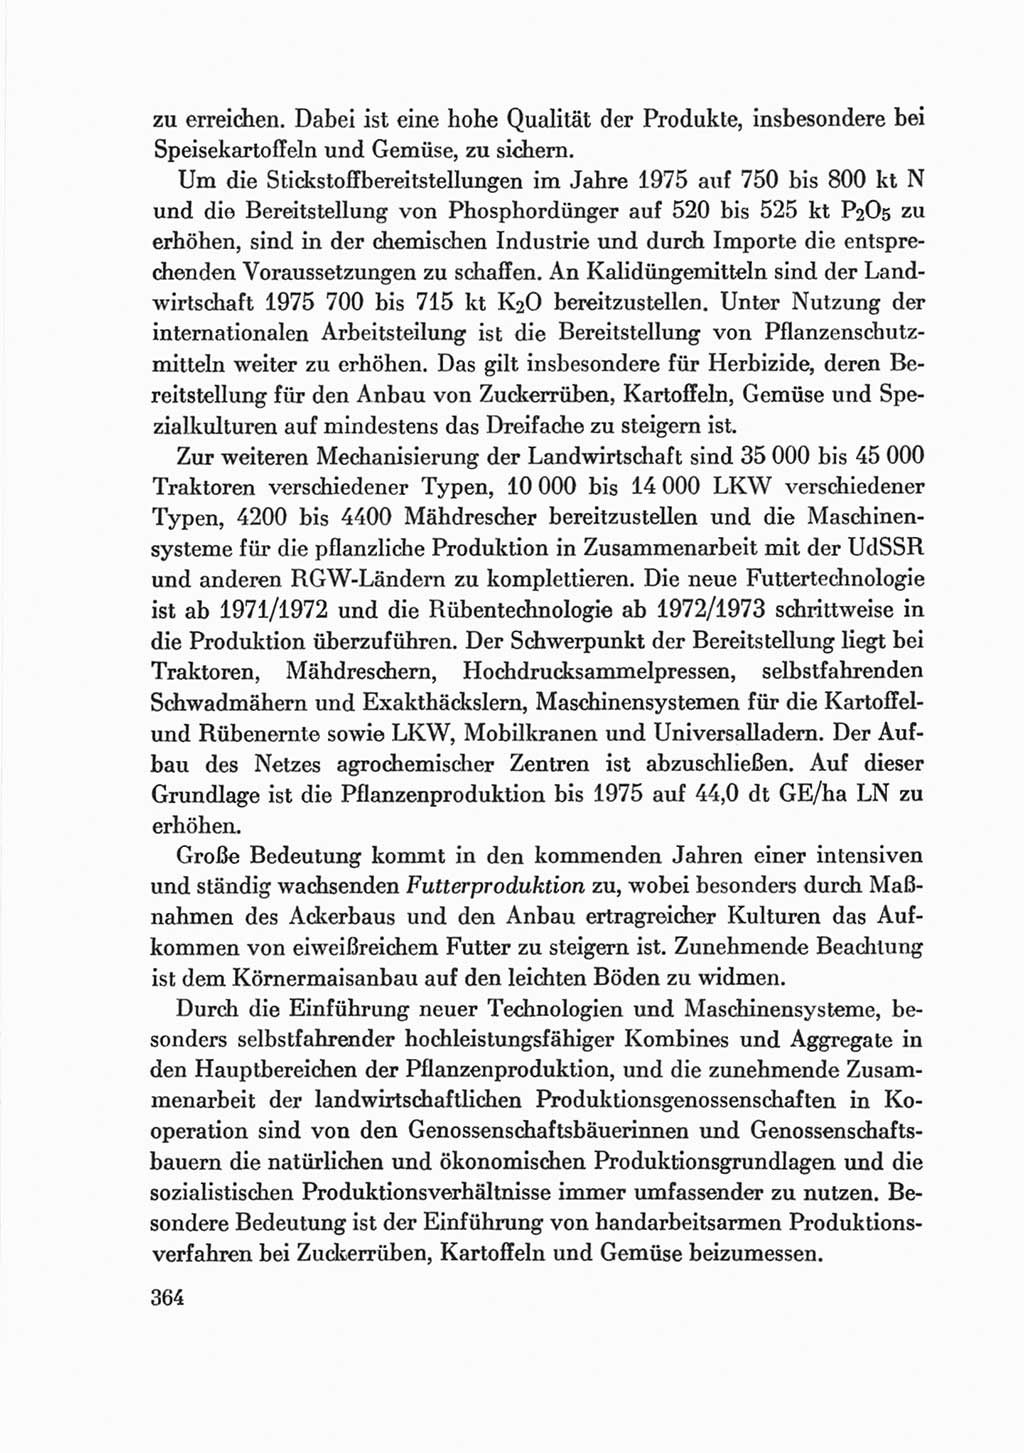 Protokoll der Verhandlungen des Ⅷ. Parteitages der Sozialistischen Einheitspartei Deutschlands (SED) [Deutsche Demokratische Republik (DDR)] 1971, Band 2, Seite 364 (Prot. Verh. Ⅷ. PT SED DDR 1971, Bd. 2, S. 364)